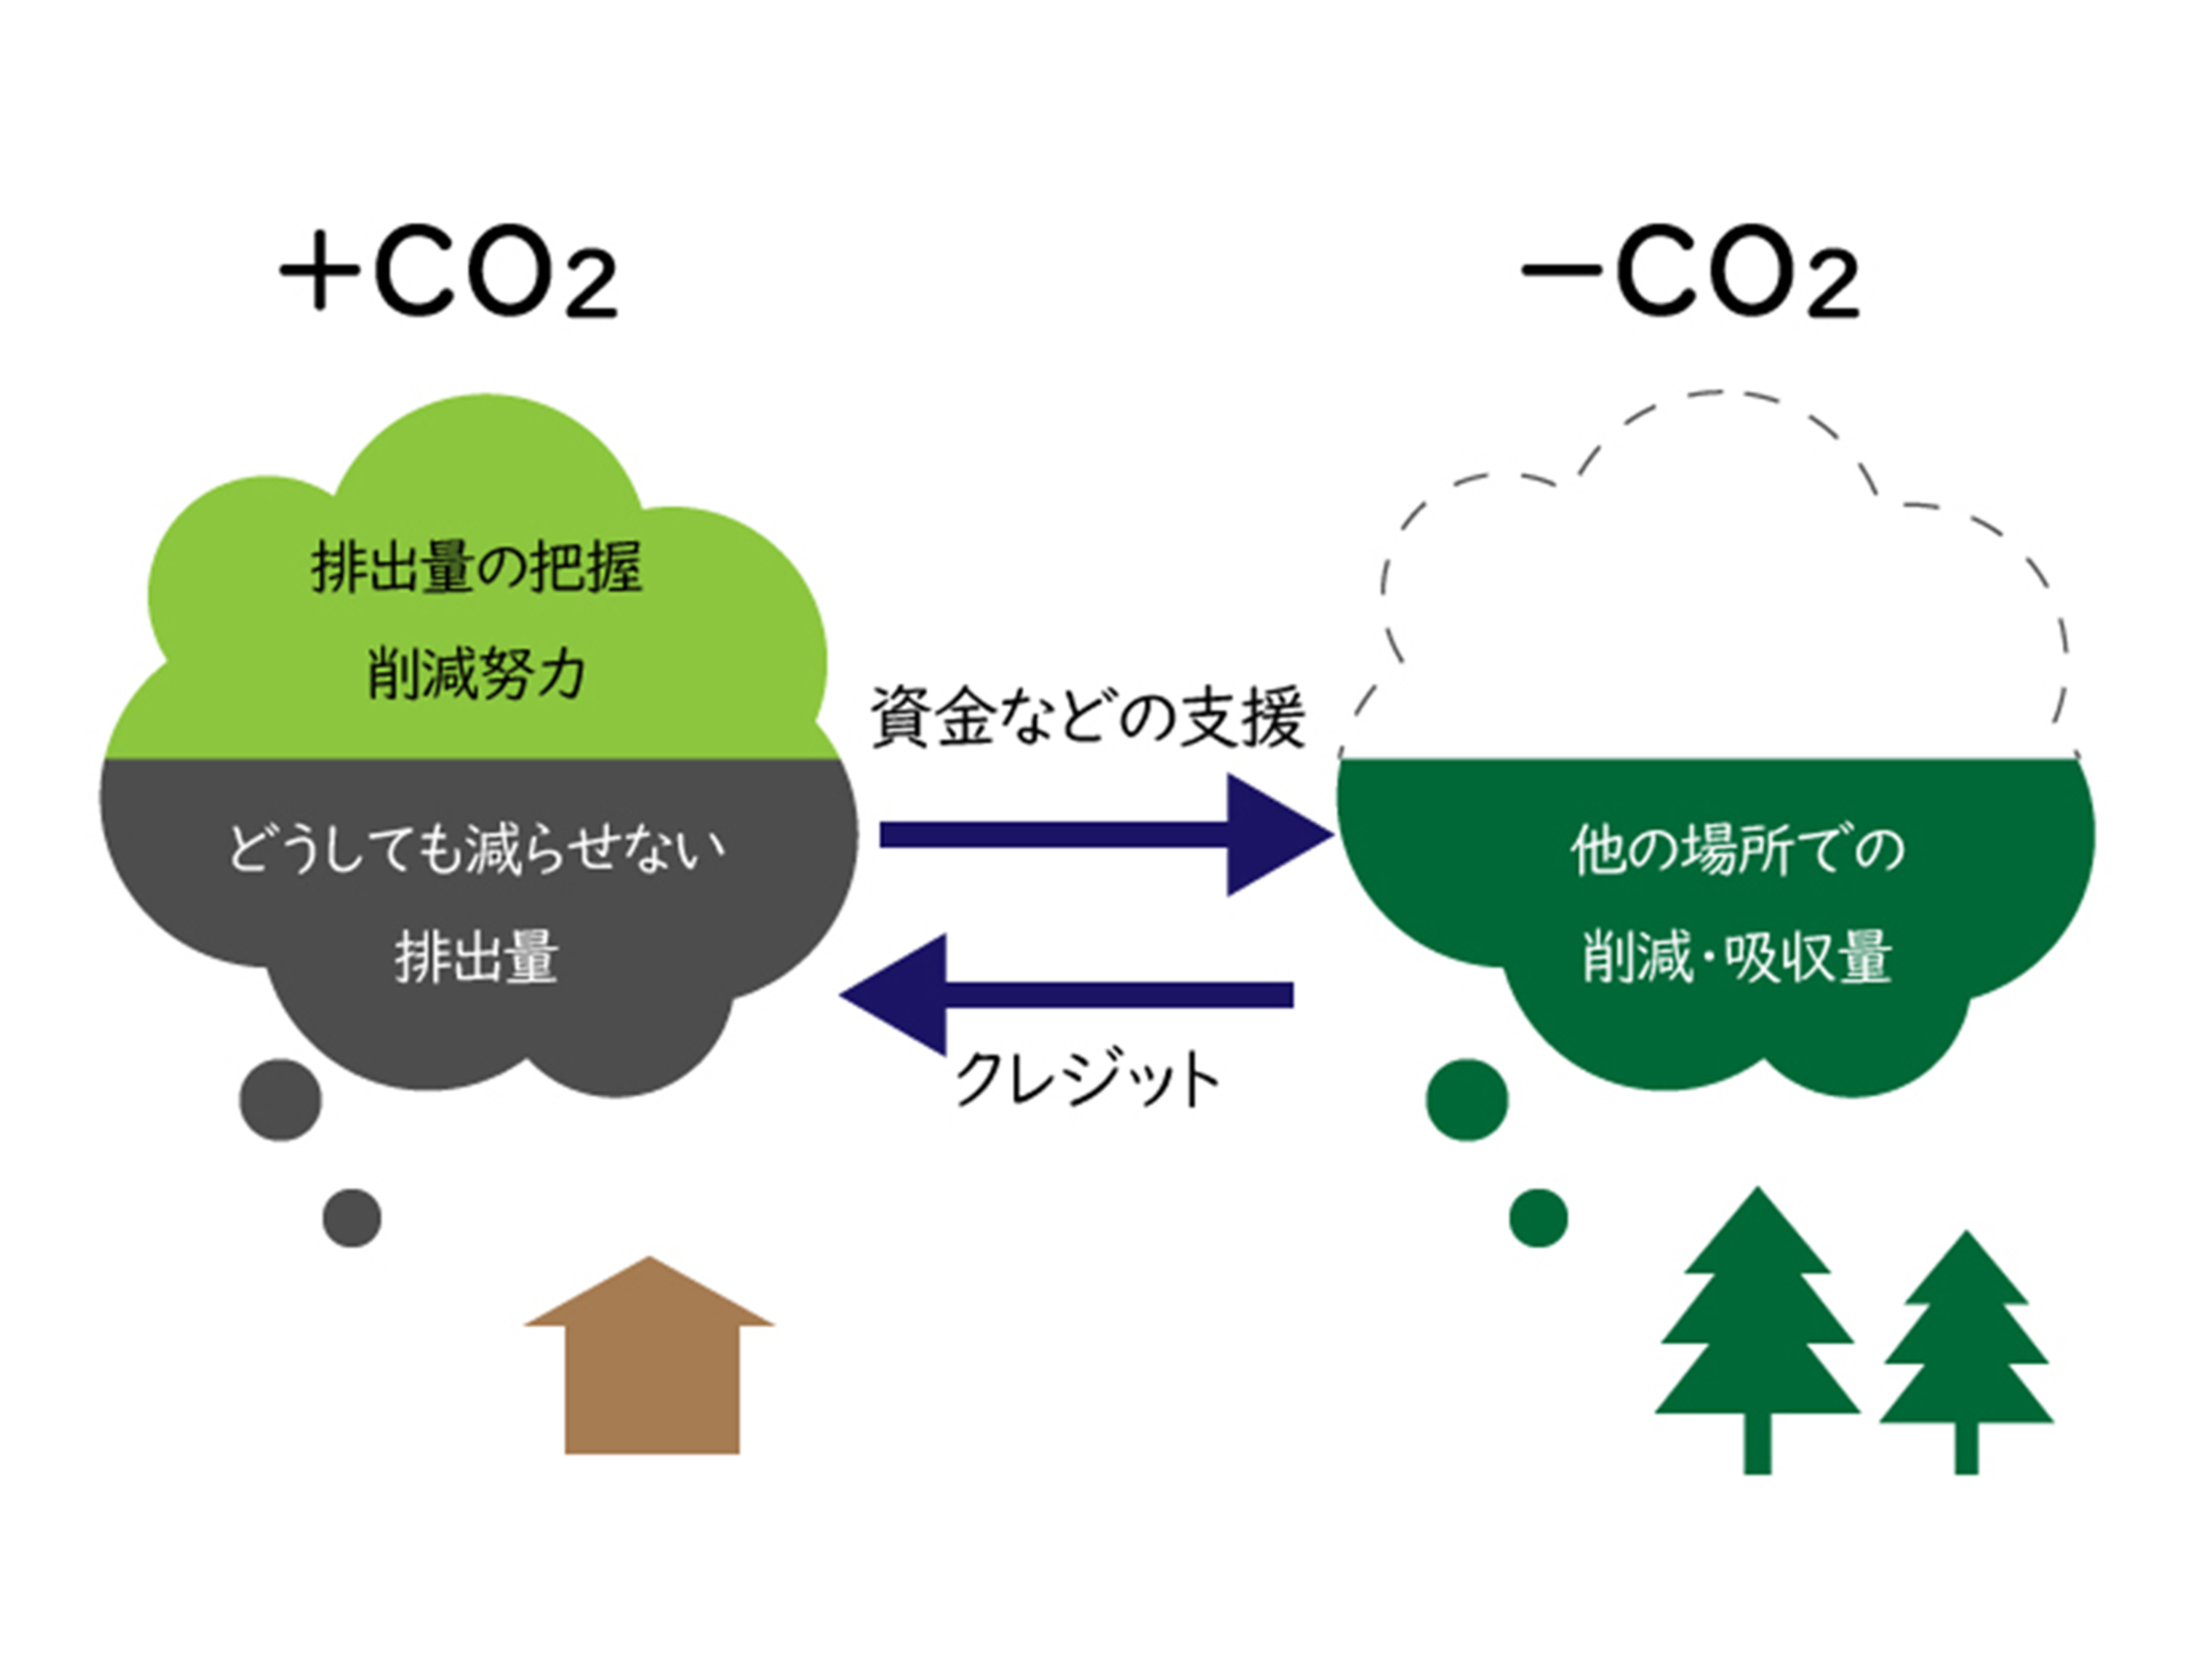 持続可能な低酸素社会の実現と地域の活性化を